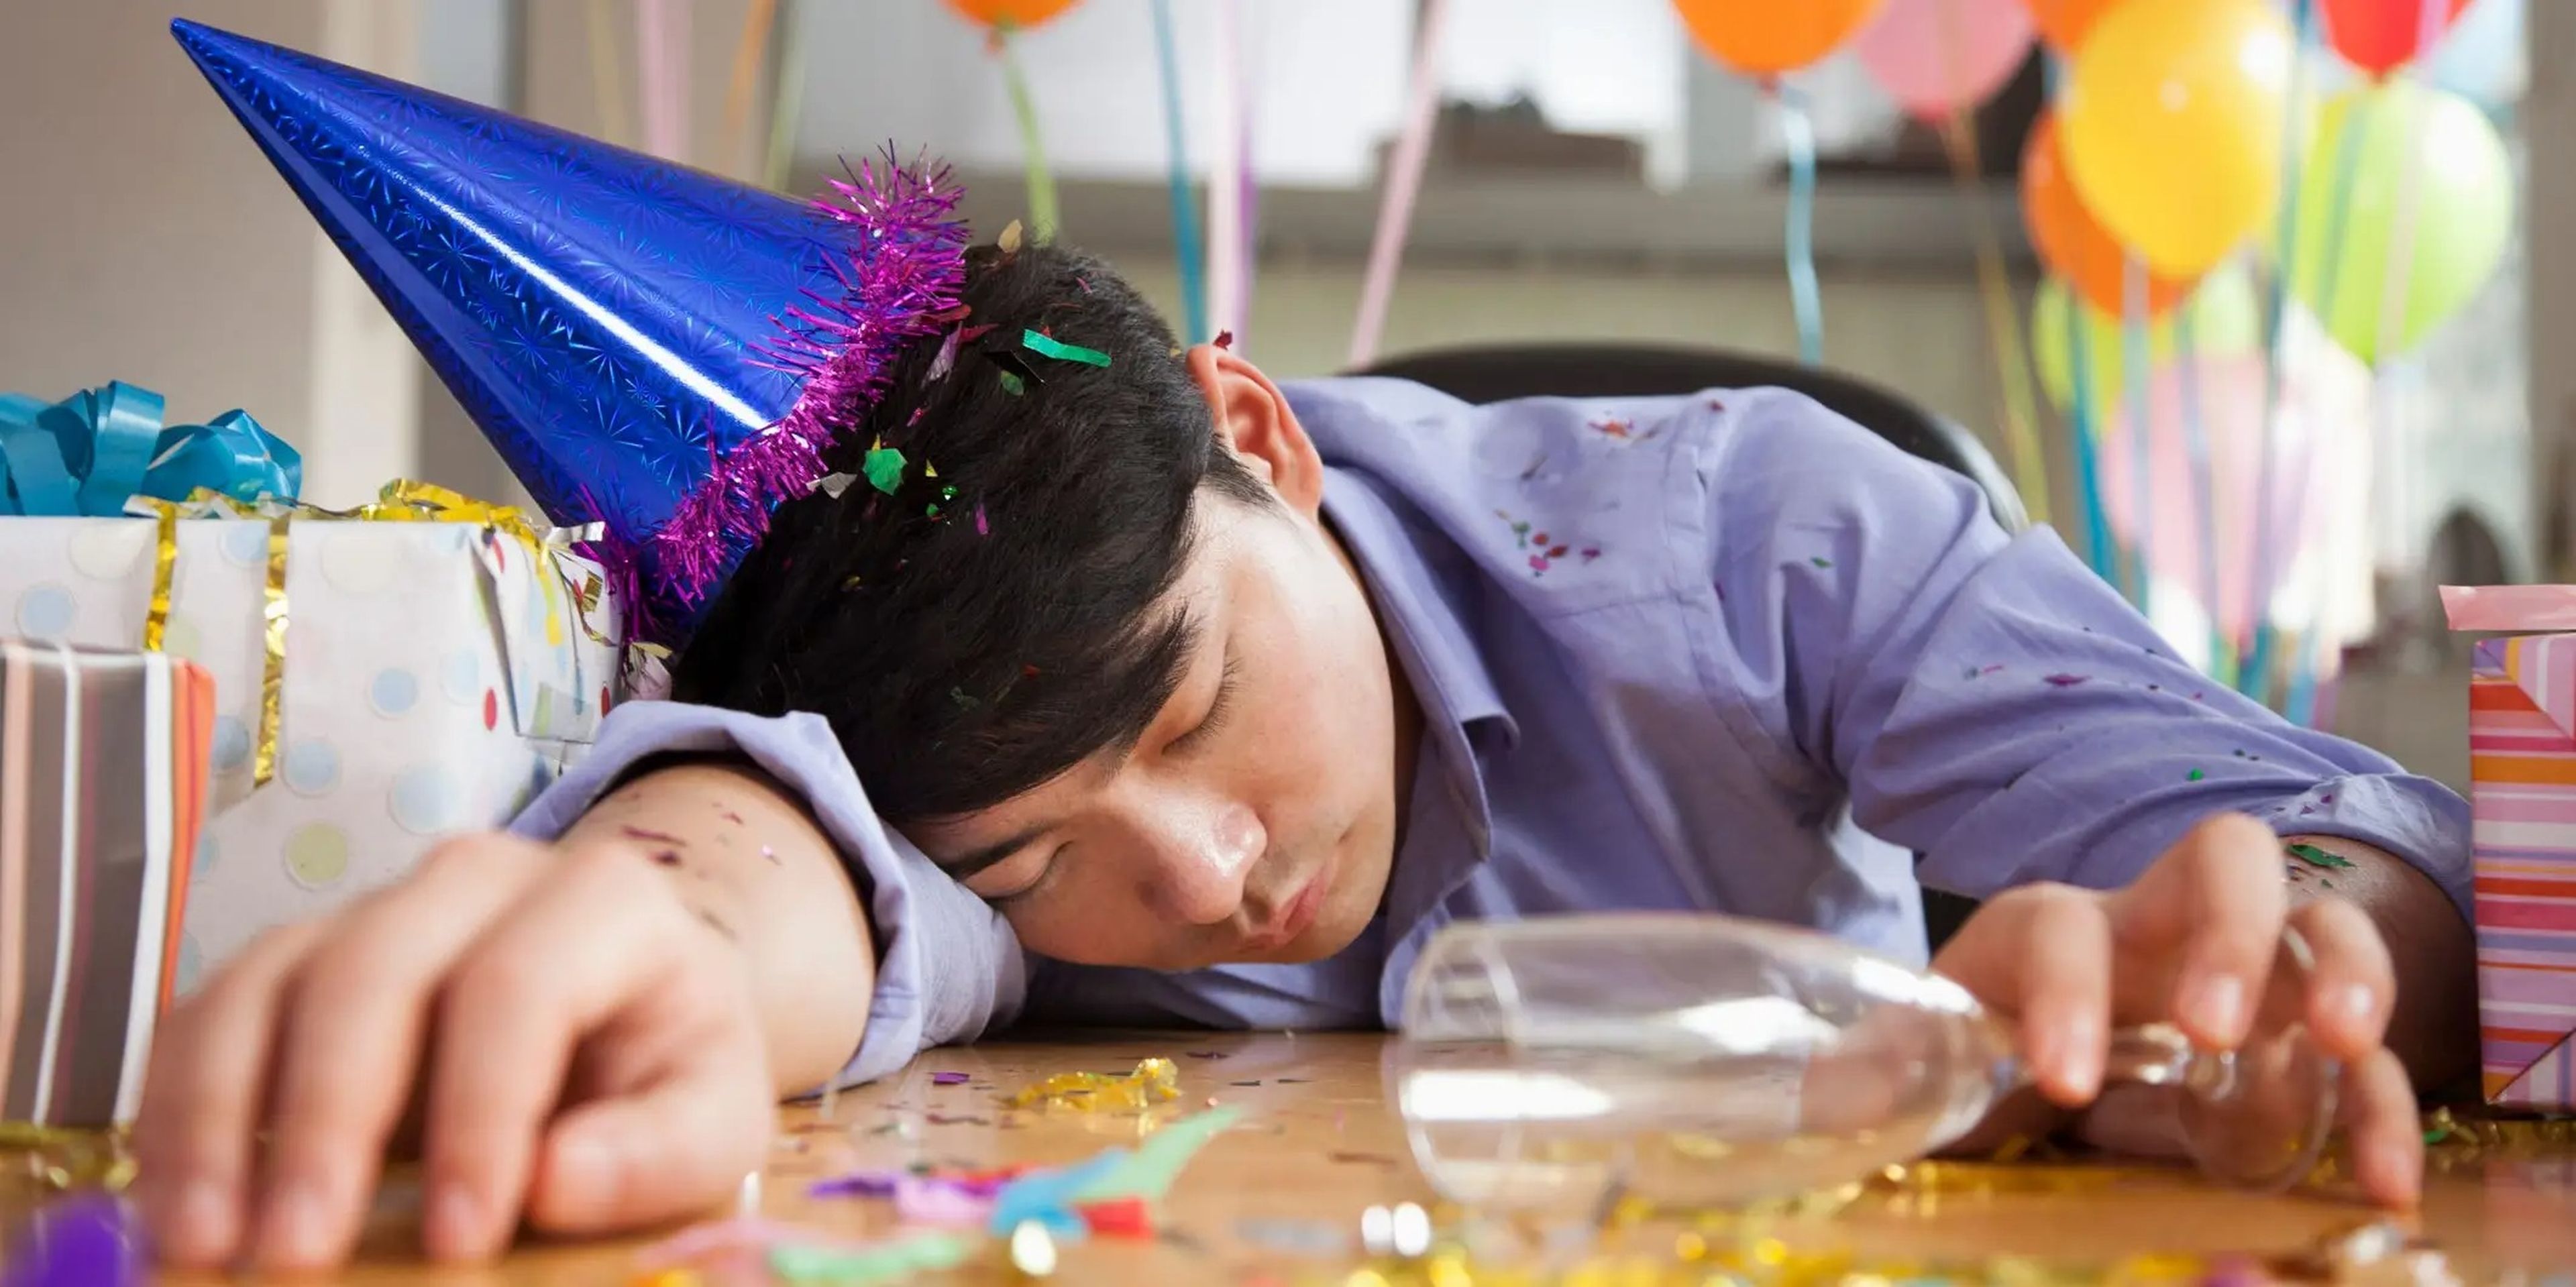 El alcohol puede ayudarte a dormir, pero arruina la calidad de tu sueño y te dejará exhausto al día siguiente.